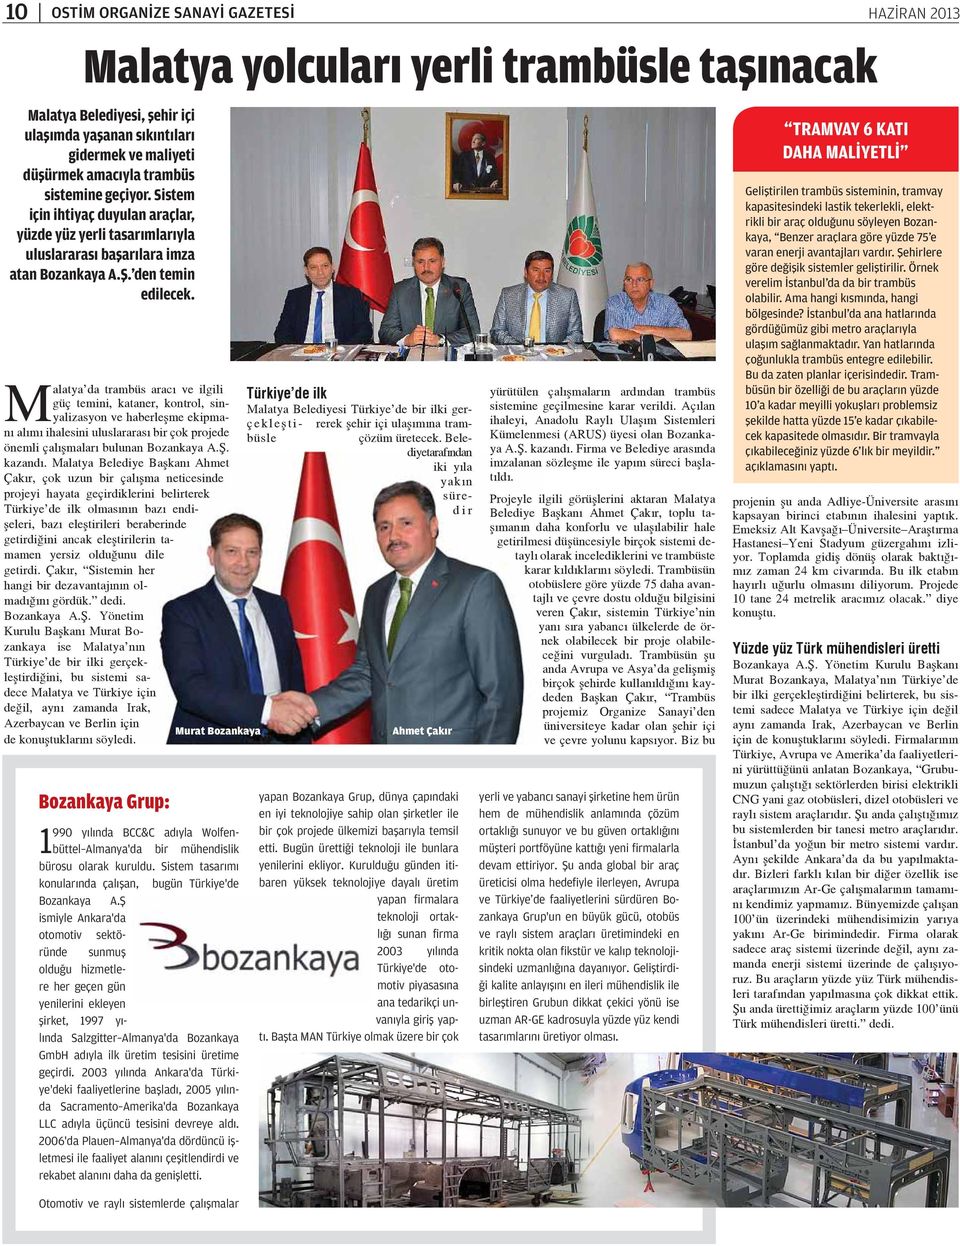 Malatya da trambüs aracı ve ilgili Türkiye de ilk güç temini, kataner, kontrol, sinyalizasyon ve haberleşme ekipma- Malatya Belediyesi Türkiye de bir ilki gerçekleş ti- rerek şehir içi ulaşımına